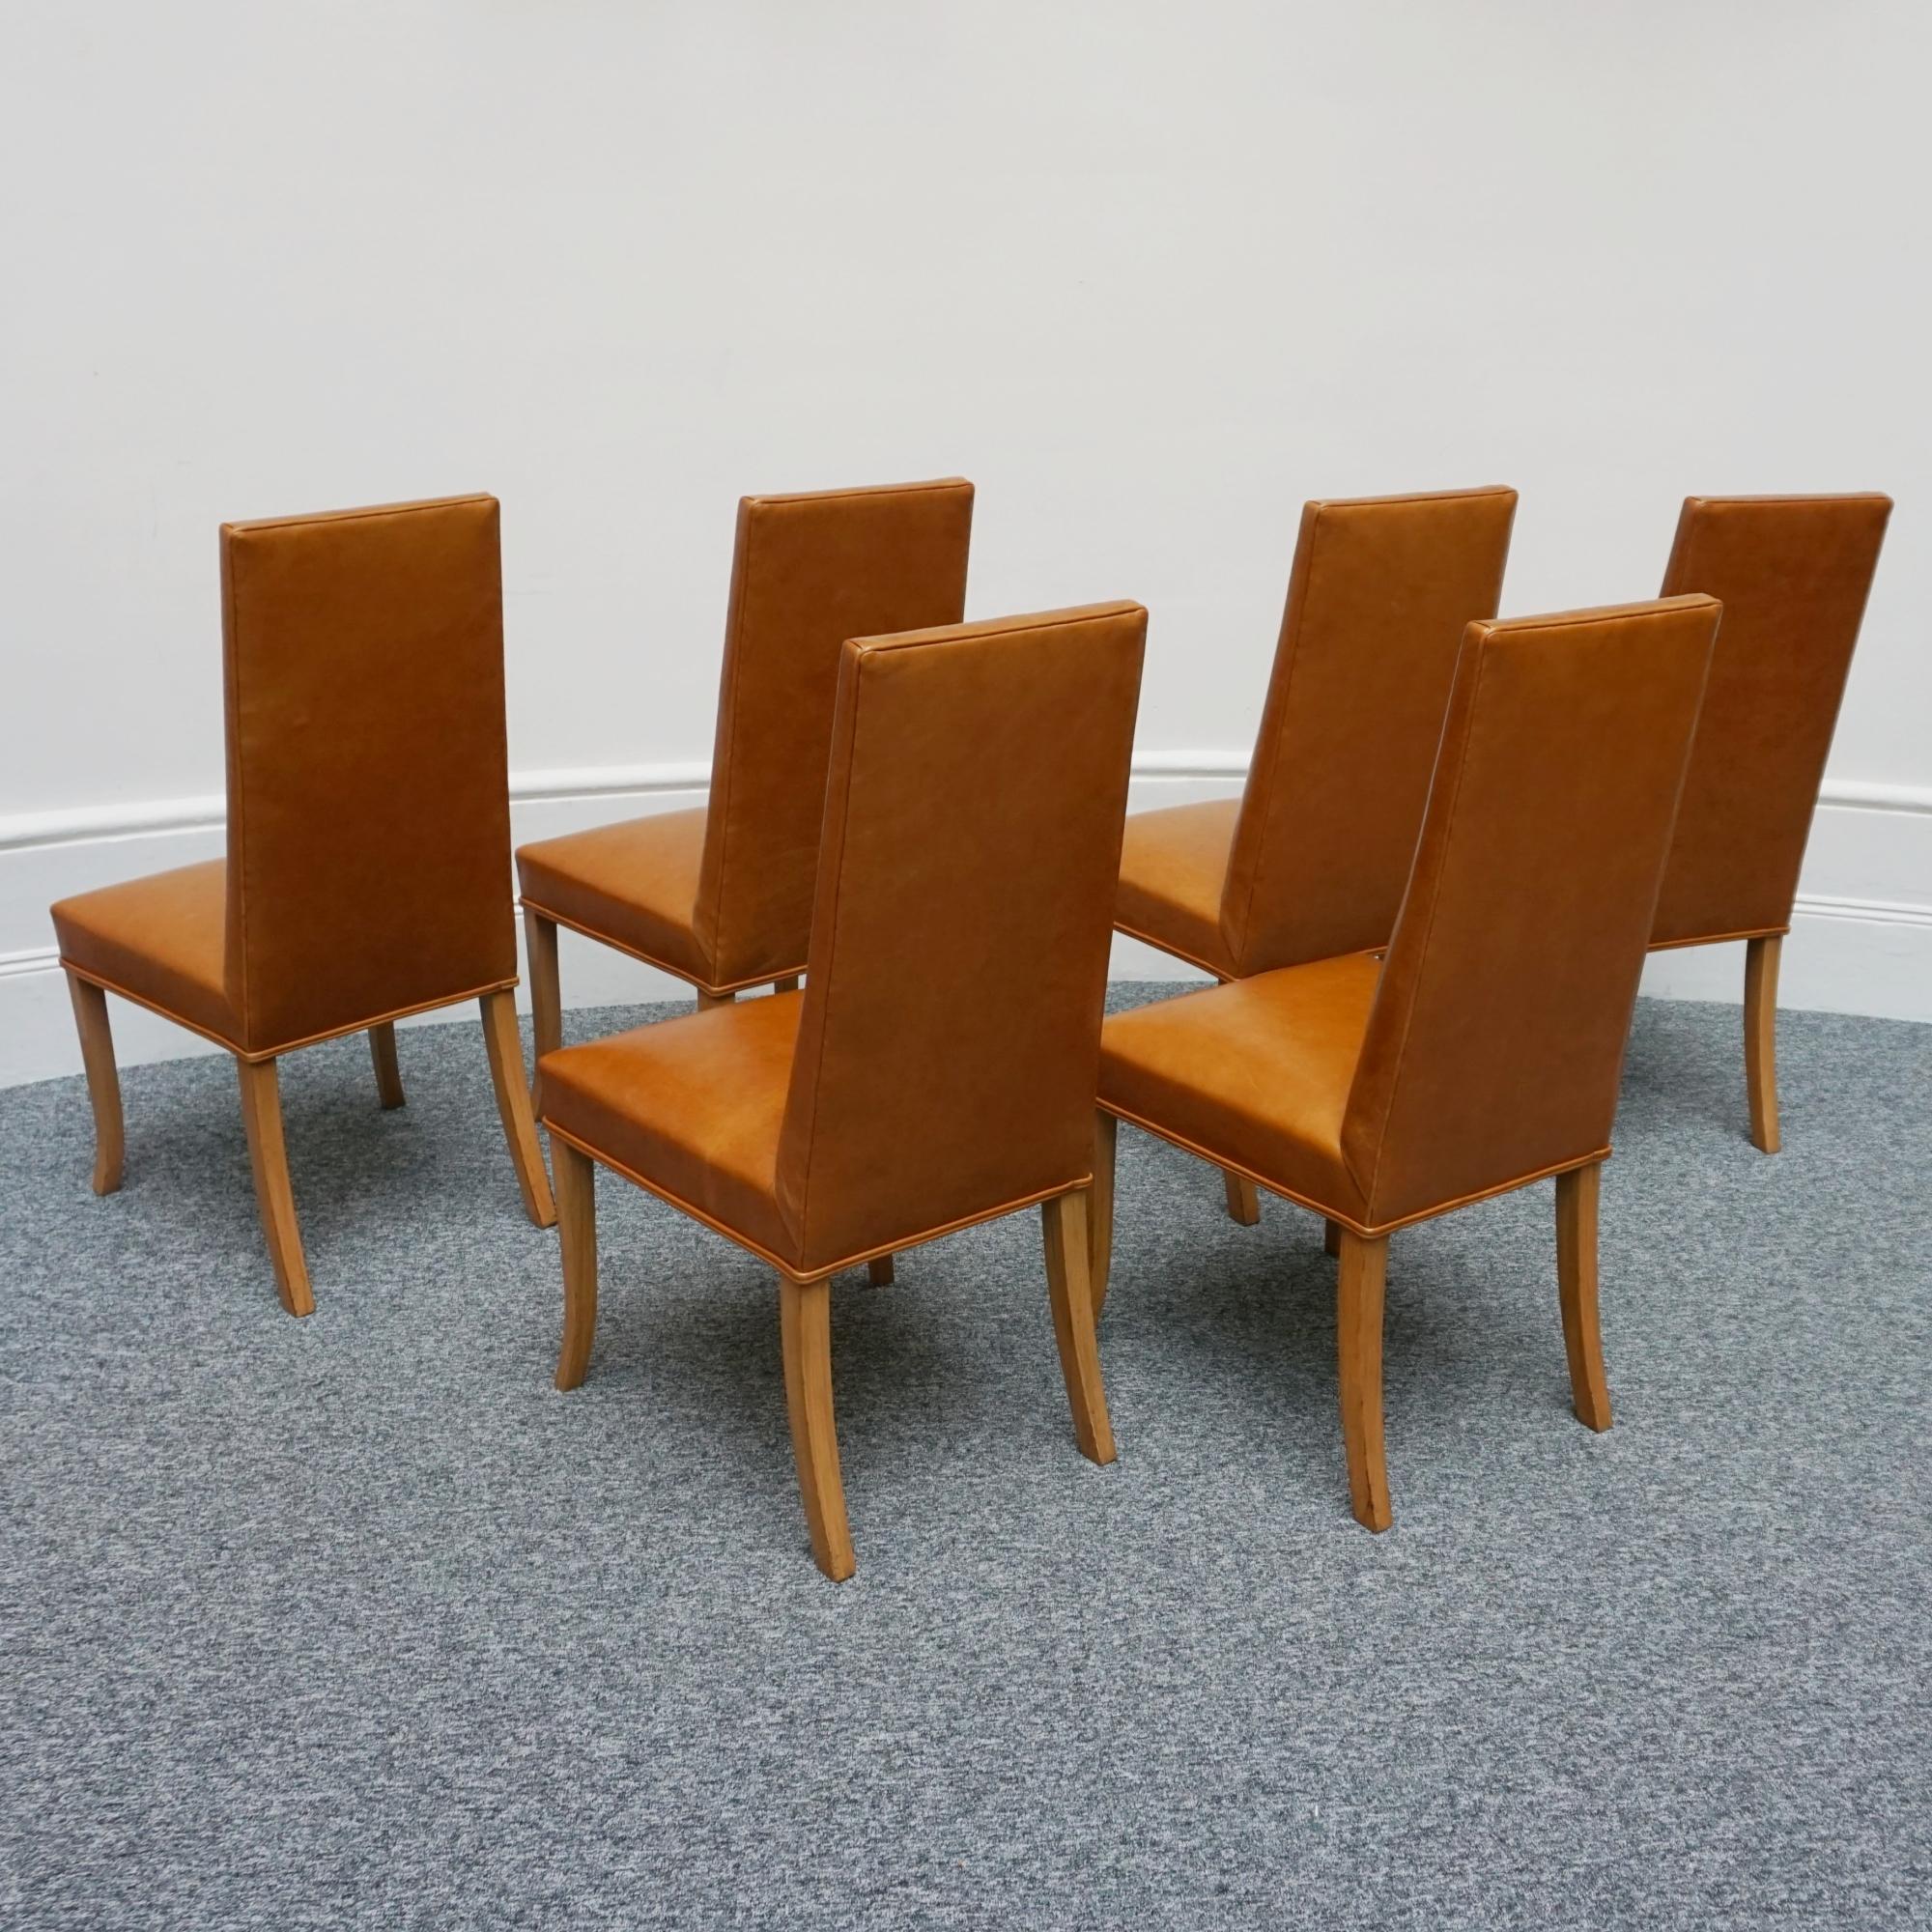 Ensemble de salle à manger extensible à huit places de style Art Déco par Hille de Londres comprenant six chaises de salle à manger et deux fauteuils carver avec des pieds et des accoudoirs en noyer massif. Table de salle à manger à rallonge en